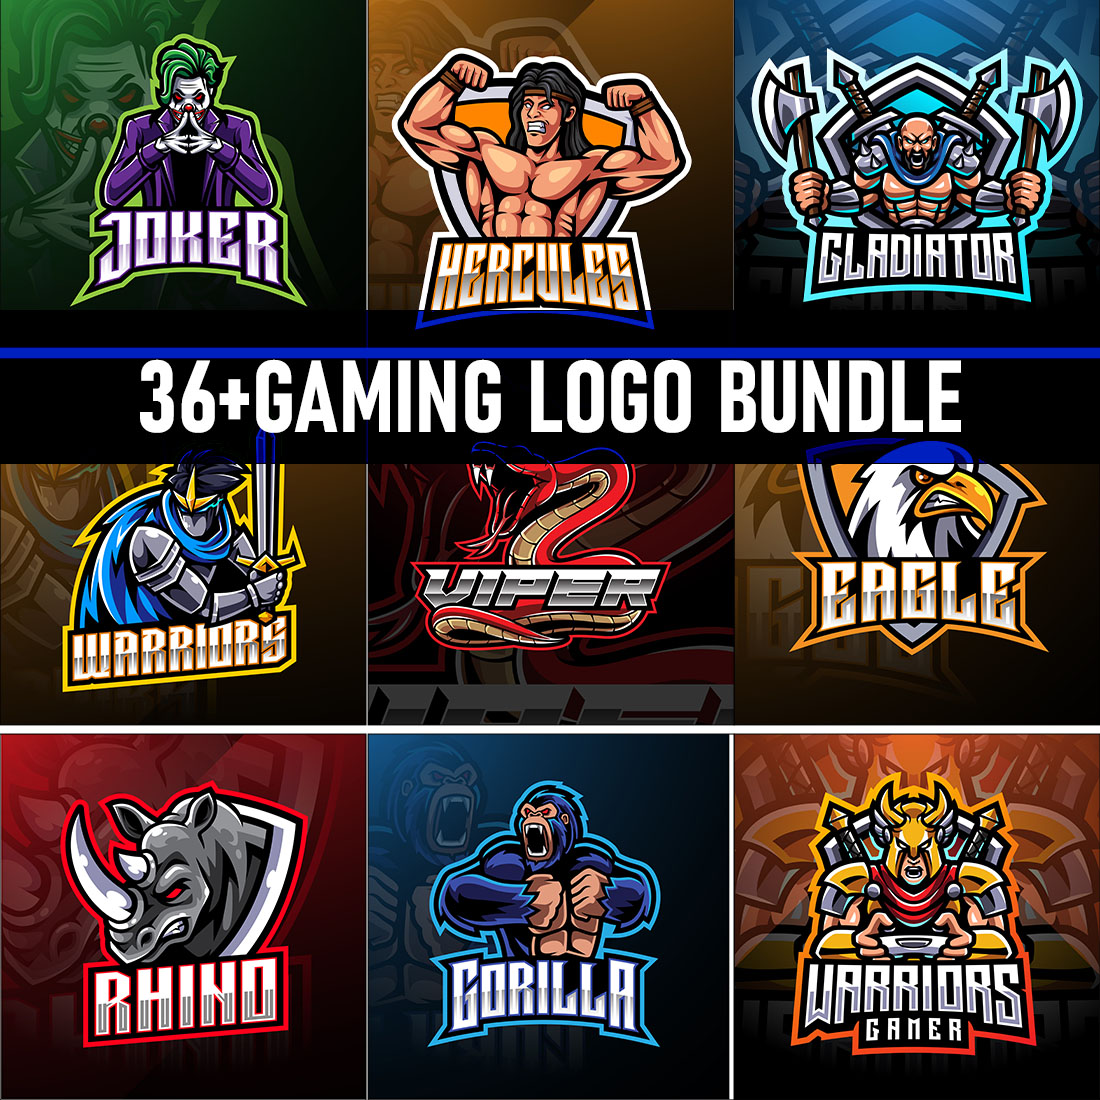 36+ Gaming Logo Bundle cover image.